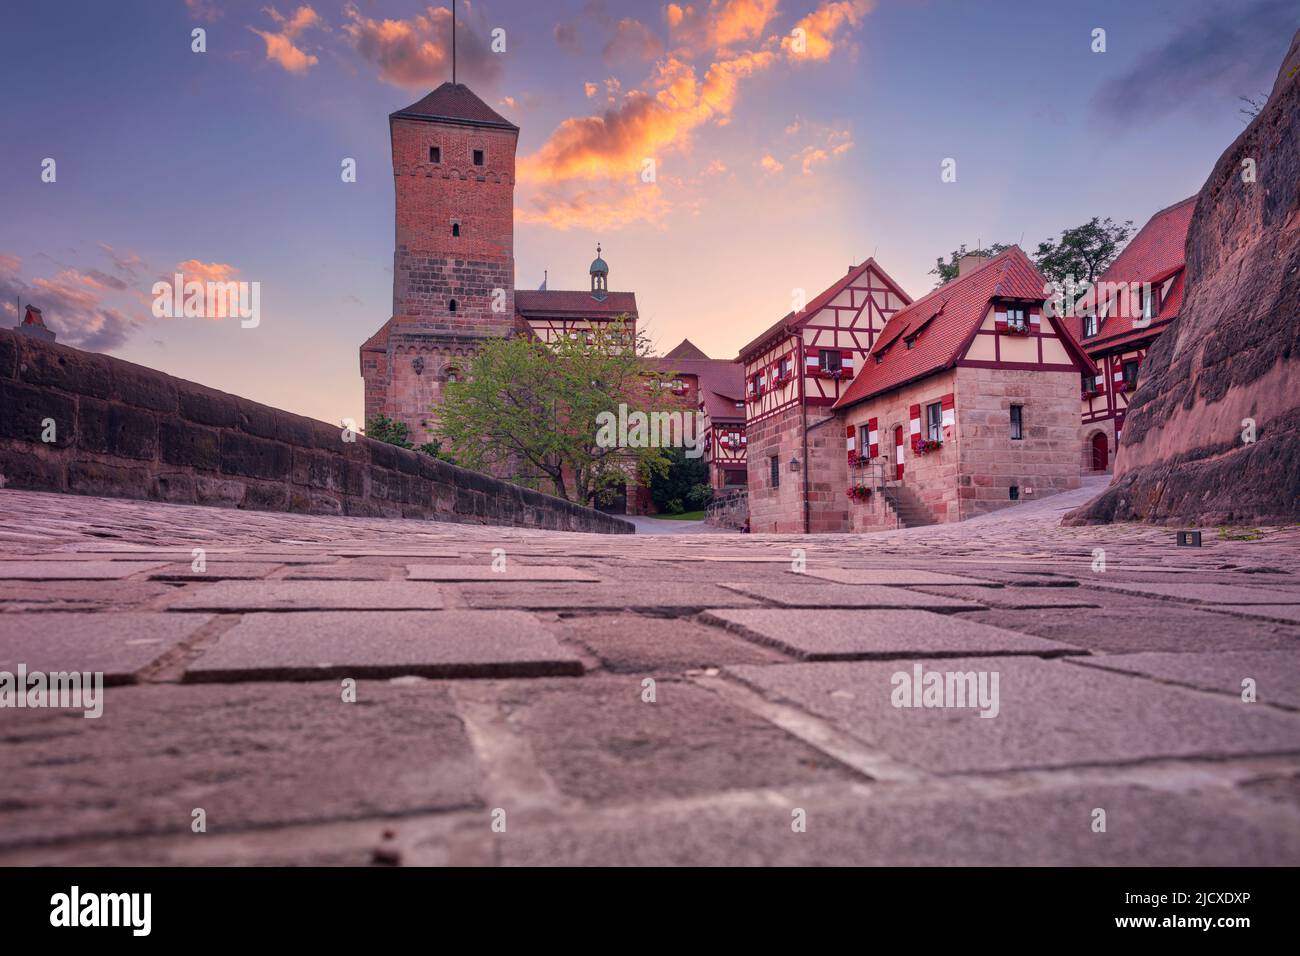 Castello di Norimberga, Norimberga, Germania. Immagine del paesaggio urbano del monumento storico del Castello di Norimberga al tramonto estivo. Foto Stock